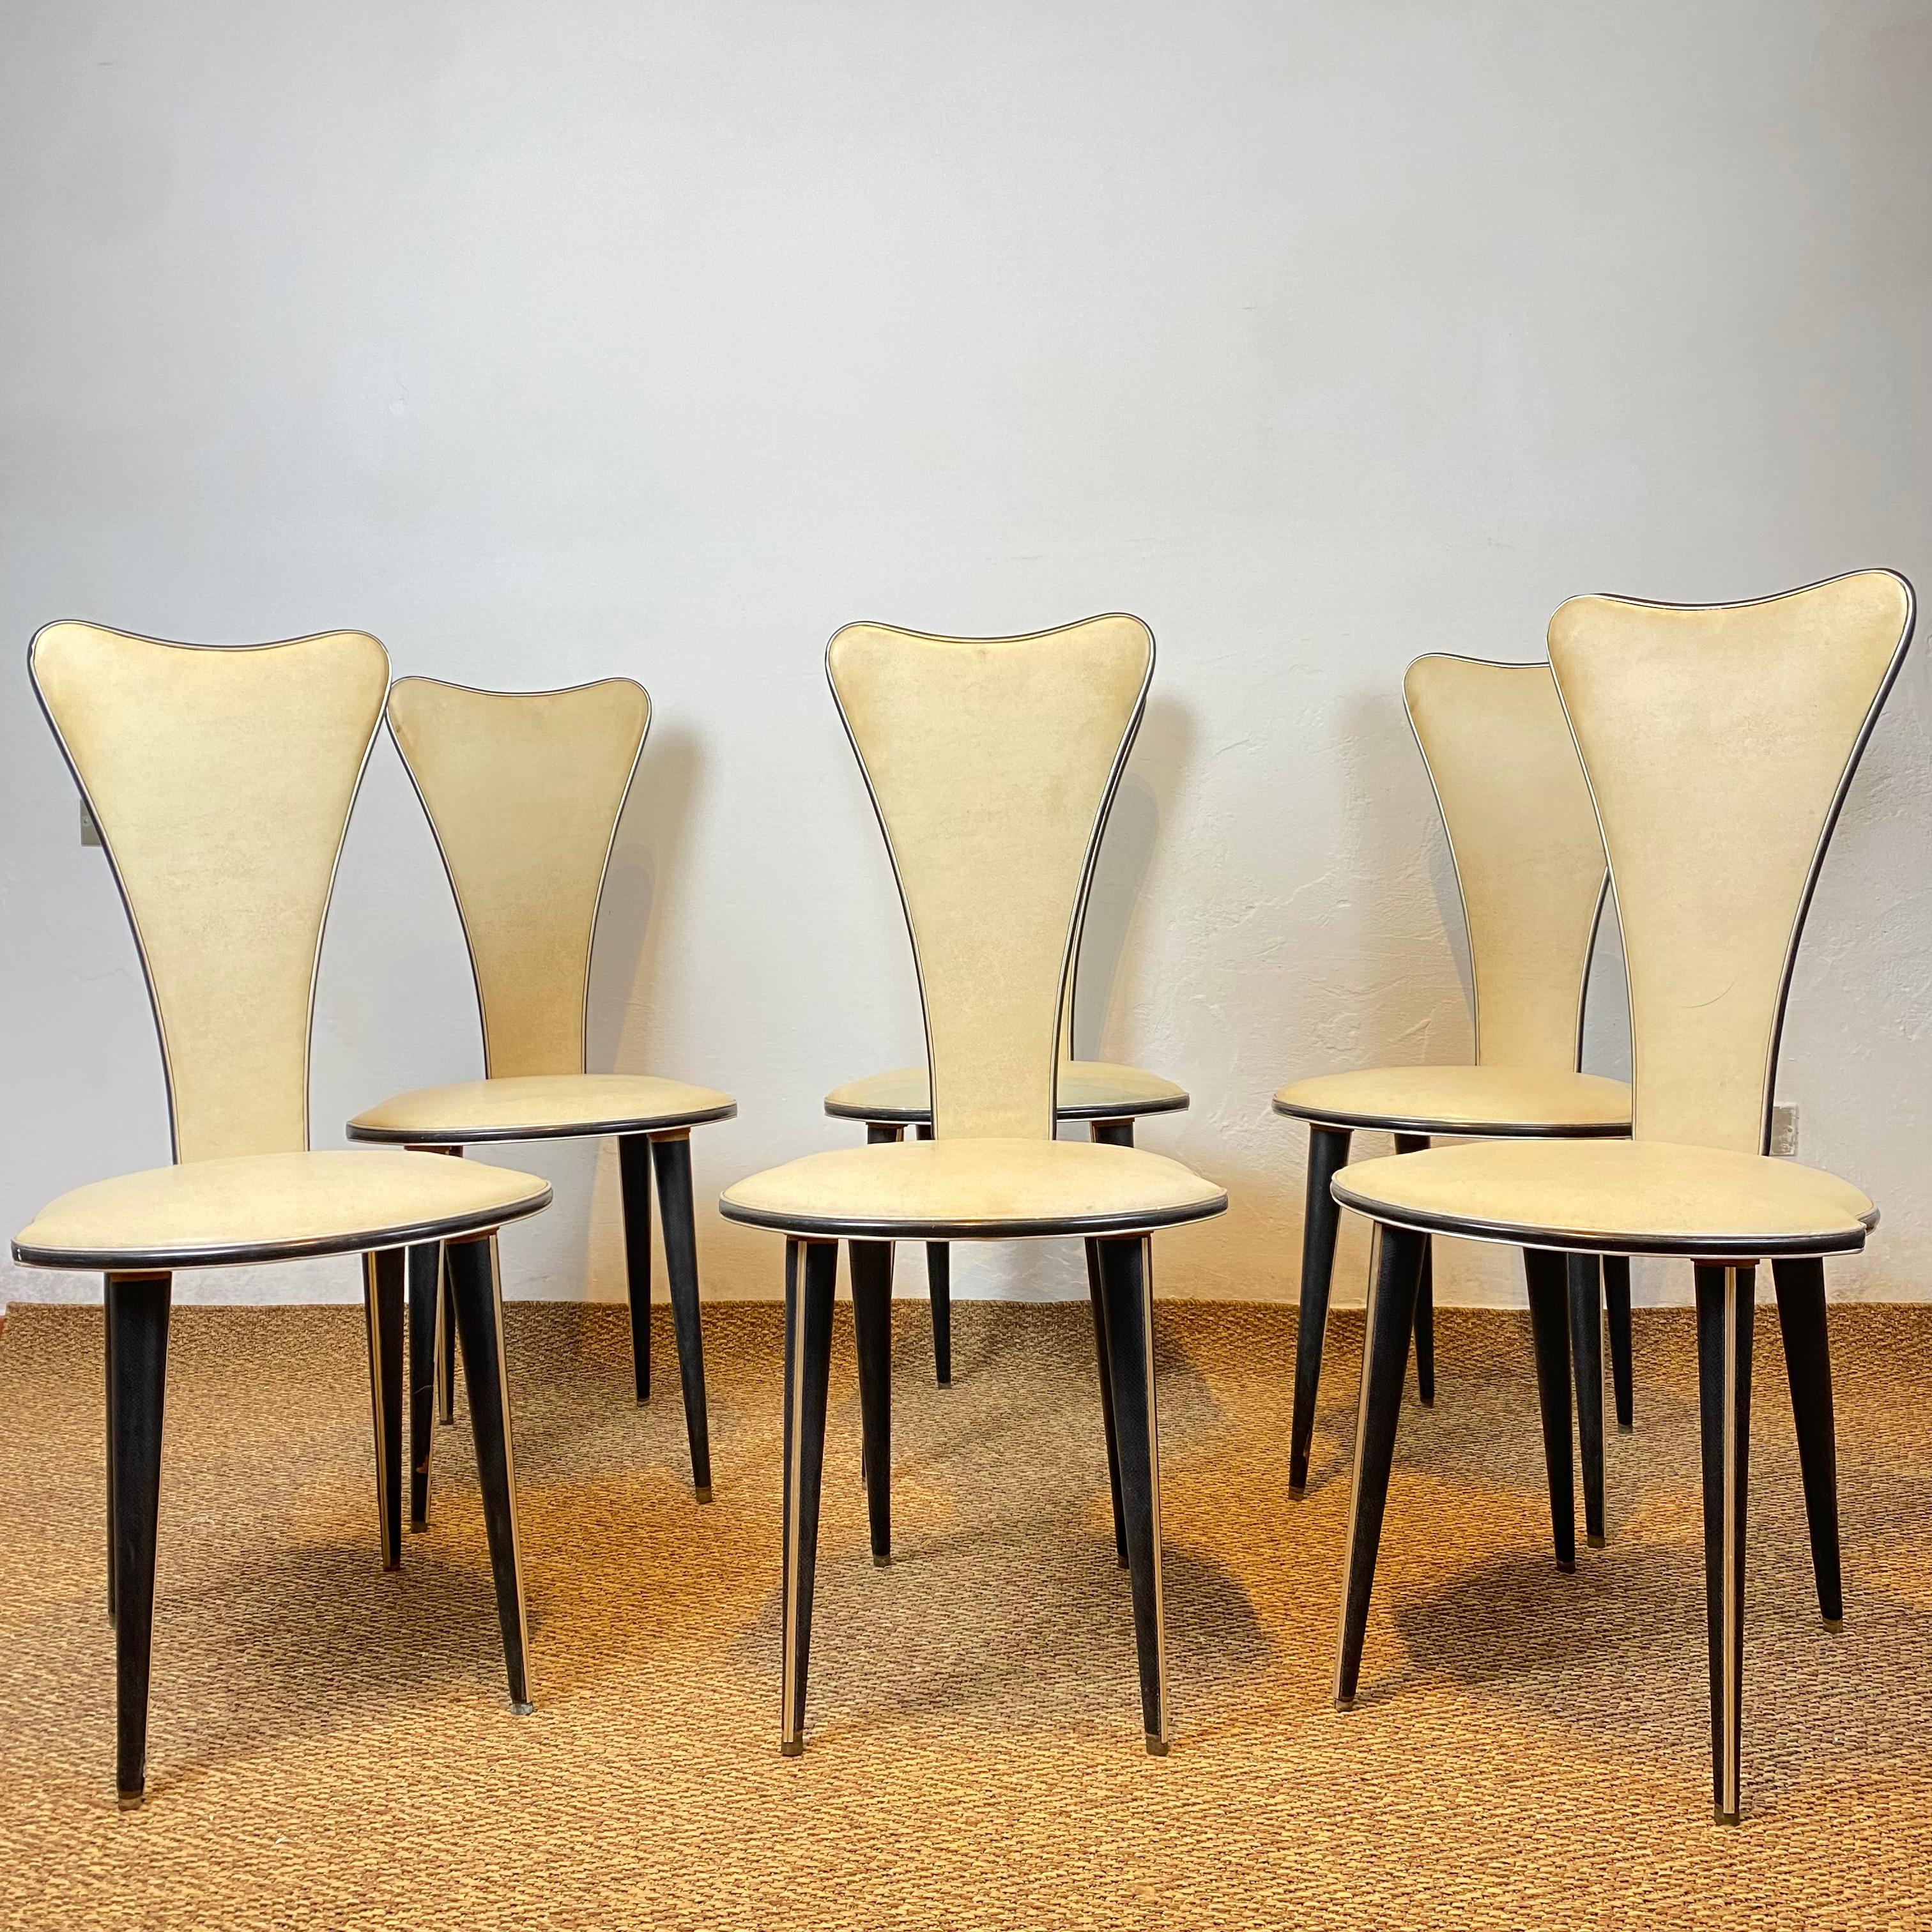 Six chaises de salle à manger conçues par Umberto Mascagni de Bologne dans les années 1950. Le châssis principal est en bois européen massif, recouvert de vinyle grainé de couleur crème et d'aluminium anodisé. Les pieds sont également recouverts de